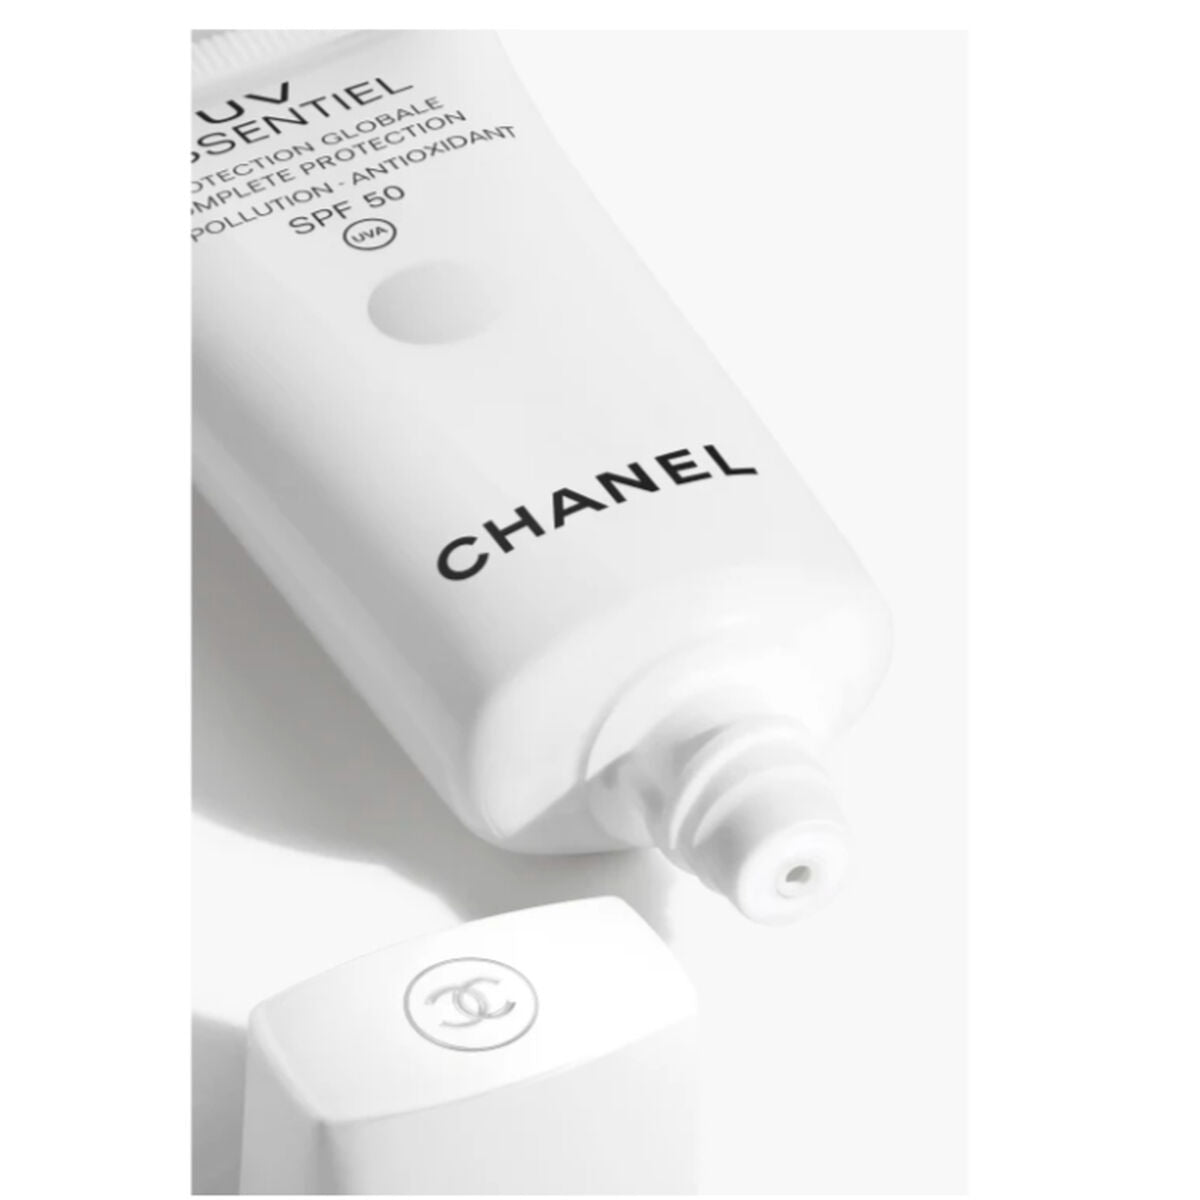 Kaufe Sonnencreme Chanel UV Essentiel Spf 50 30 ml bei AWK Flagship um € 78.00